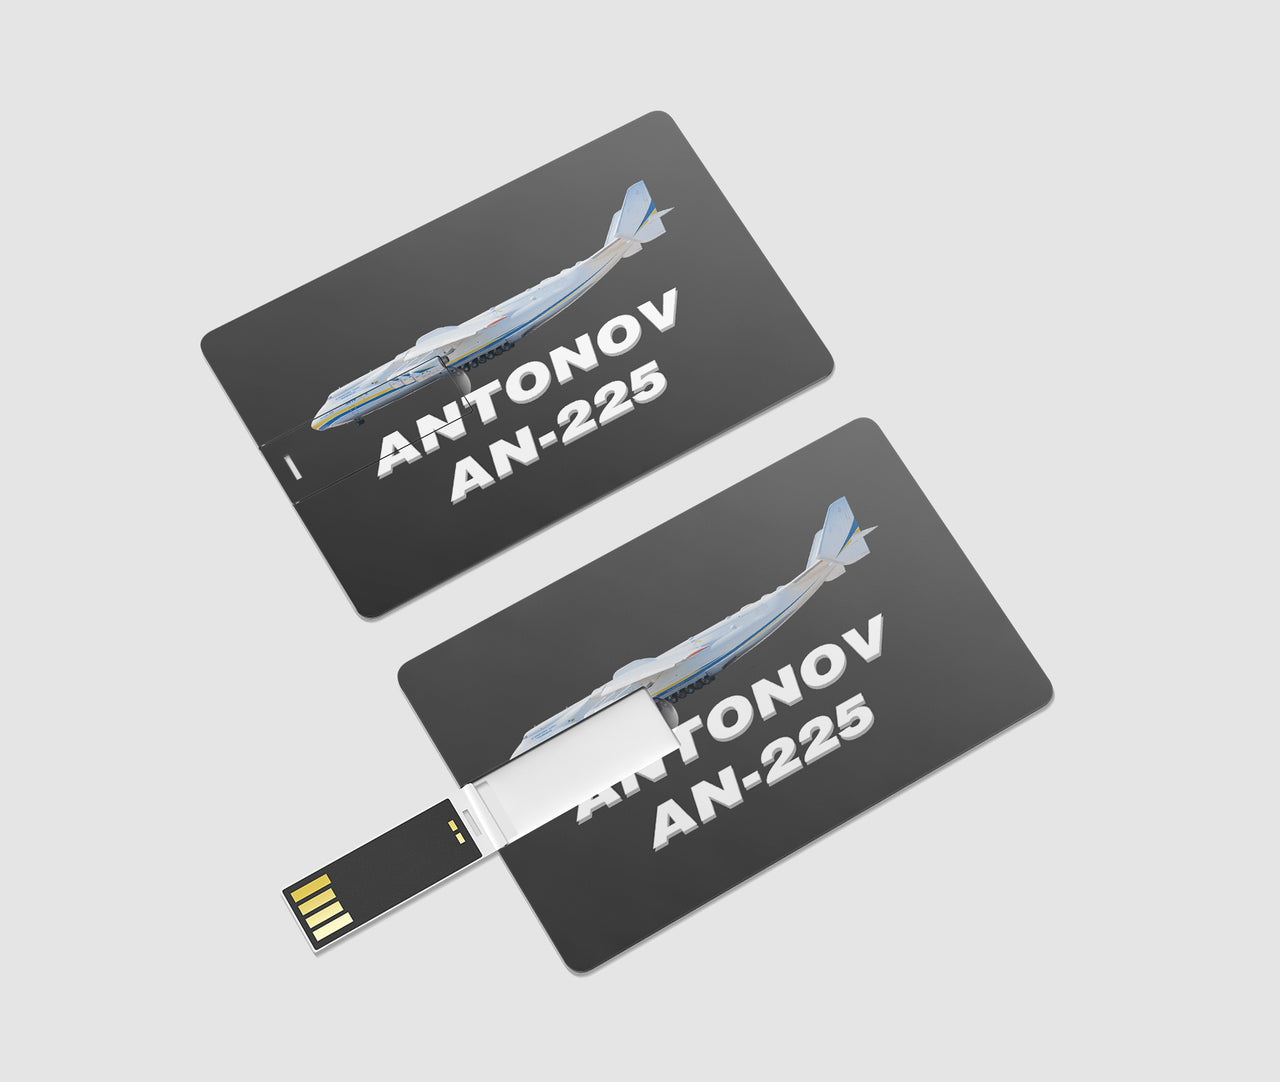 The Antonov AN-225 Designed USB Cards